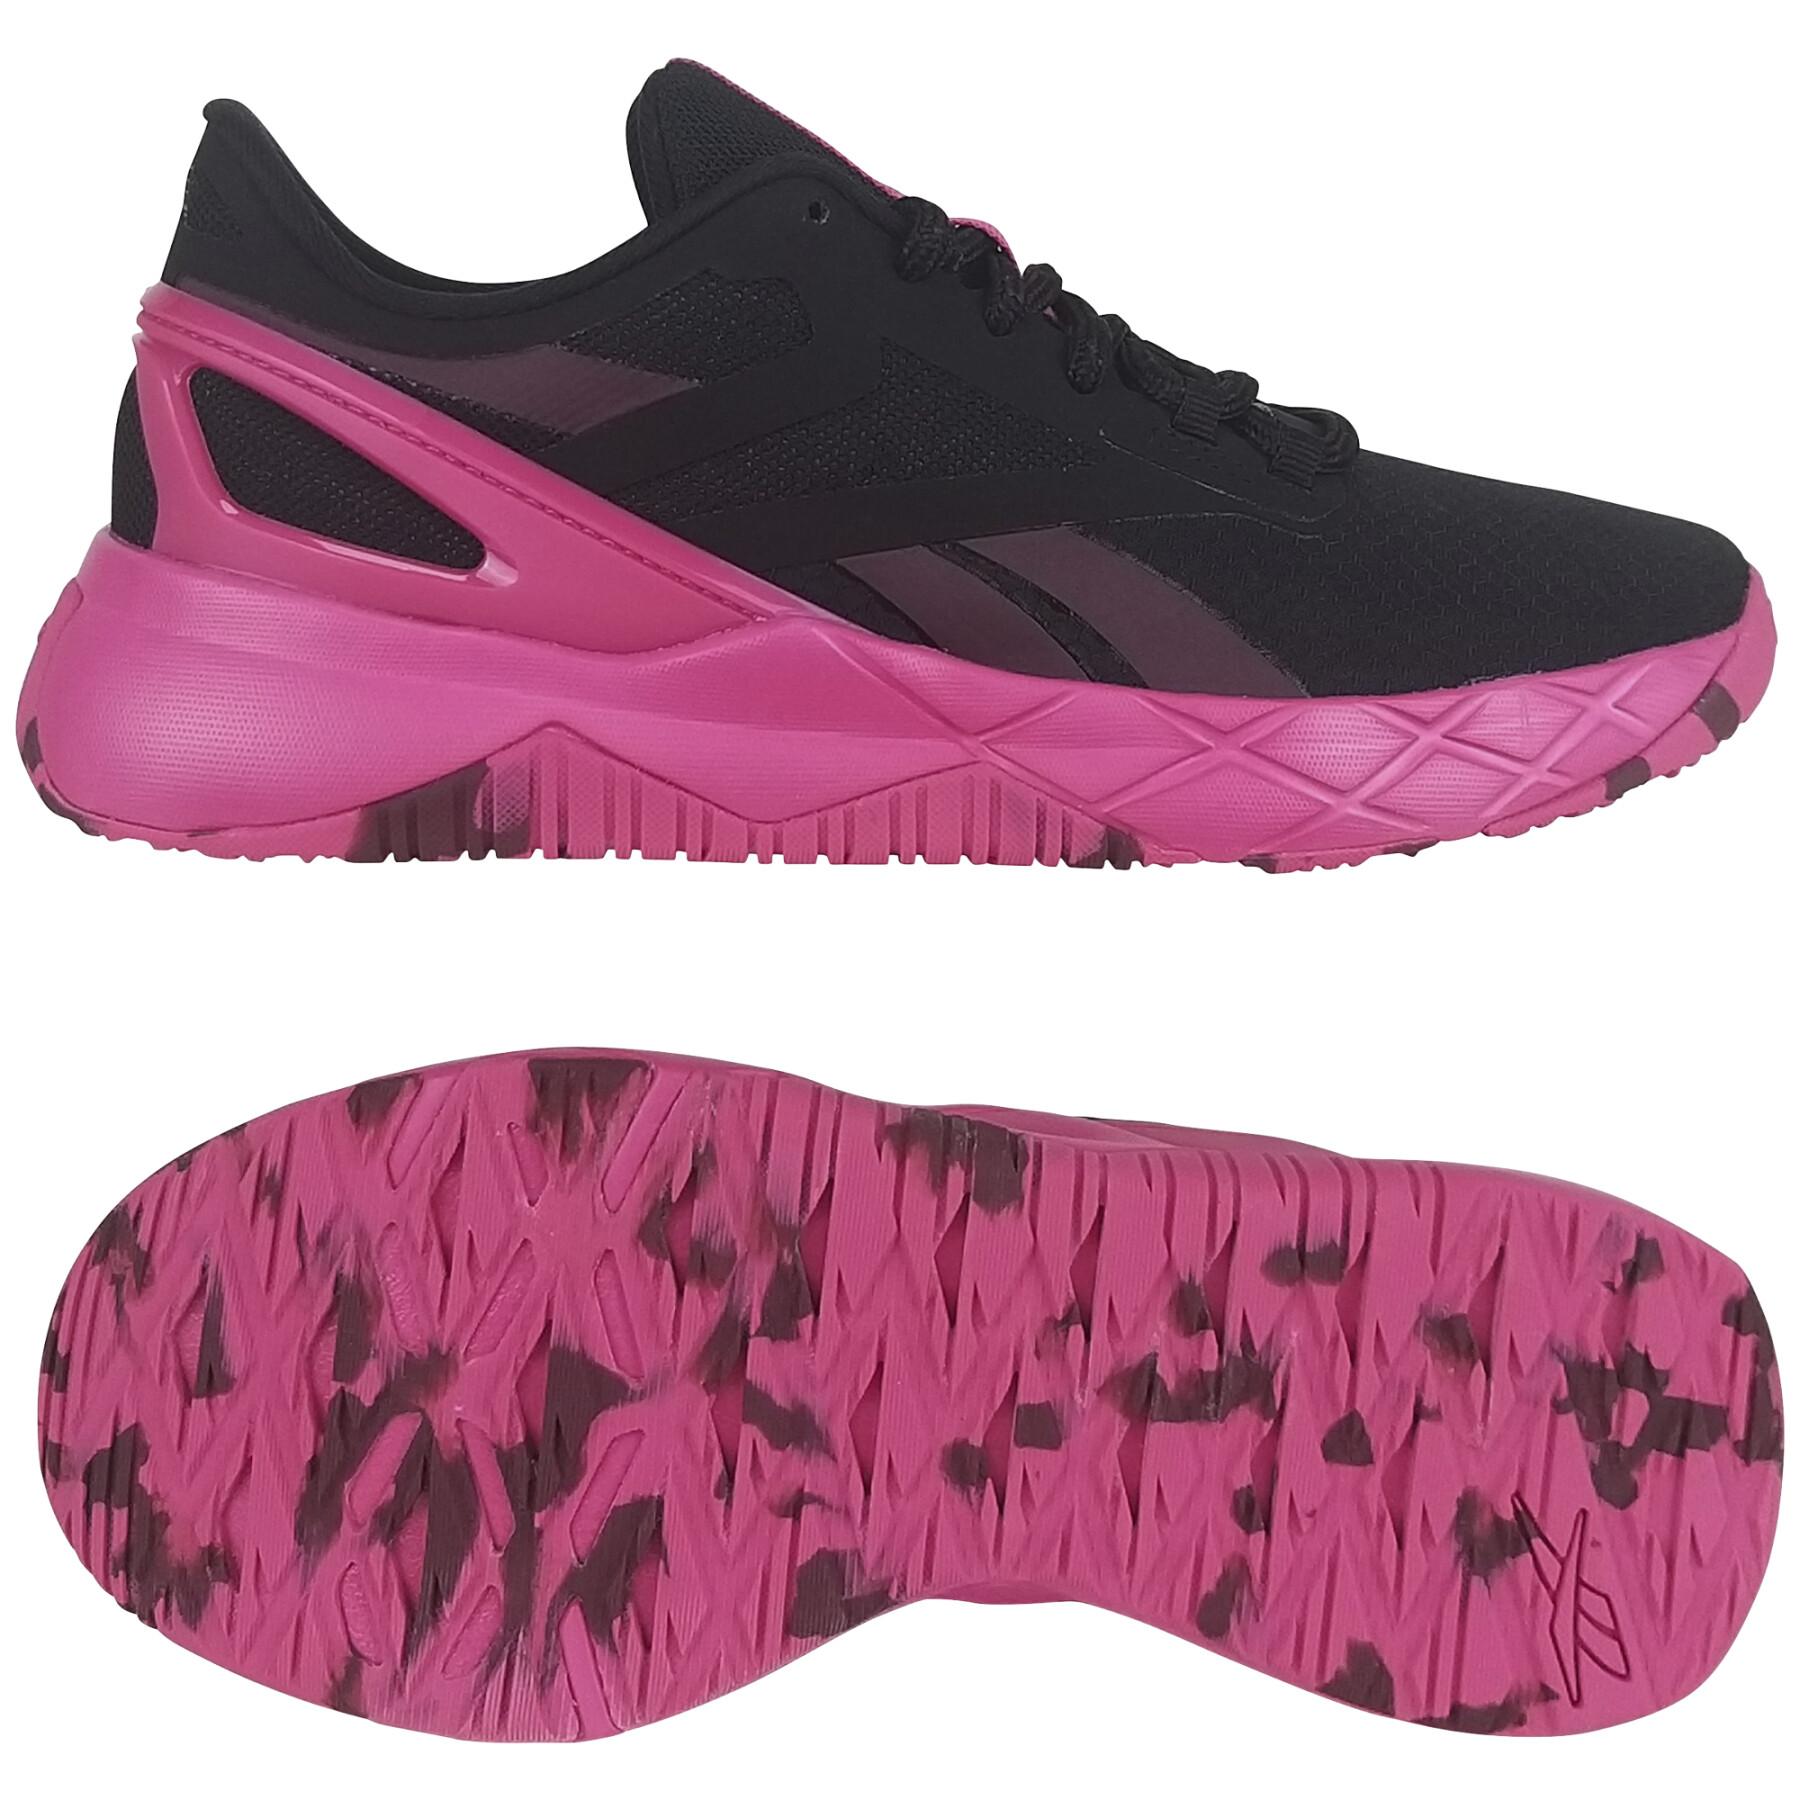 Schuhe für Frauen Reebok Nanoflex Tr